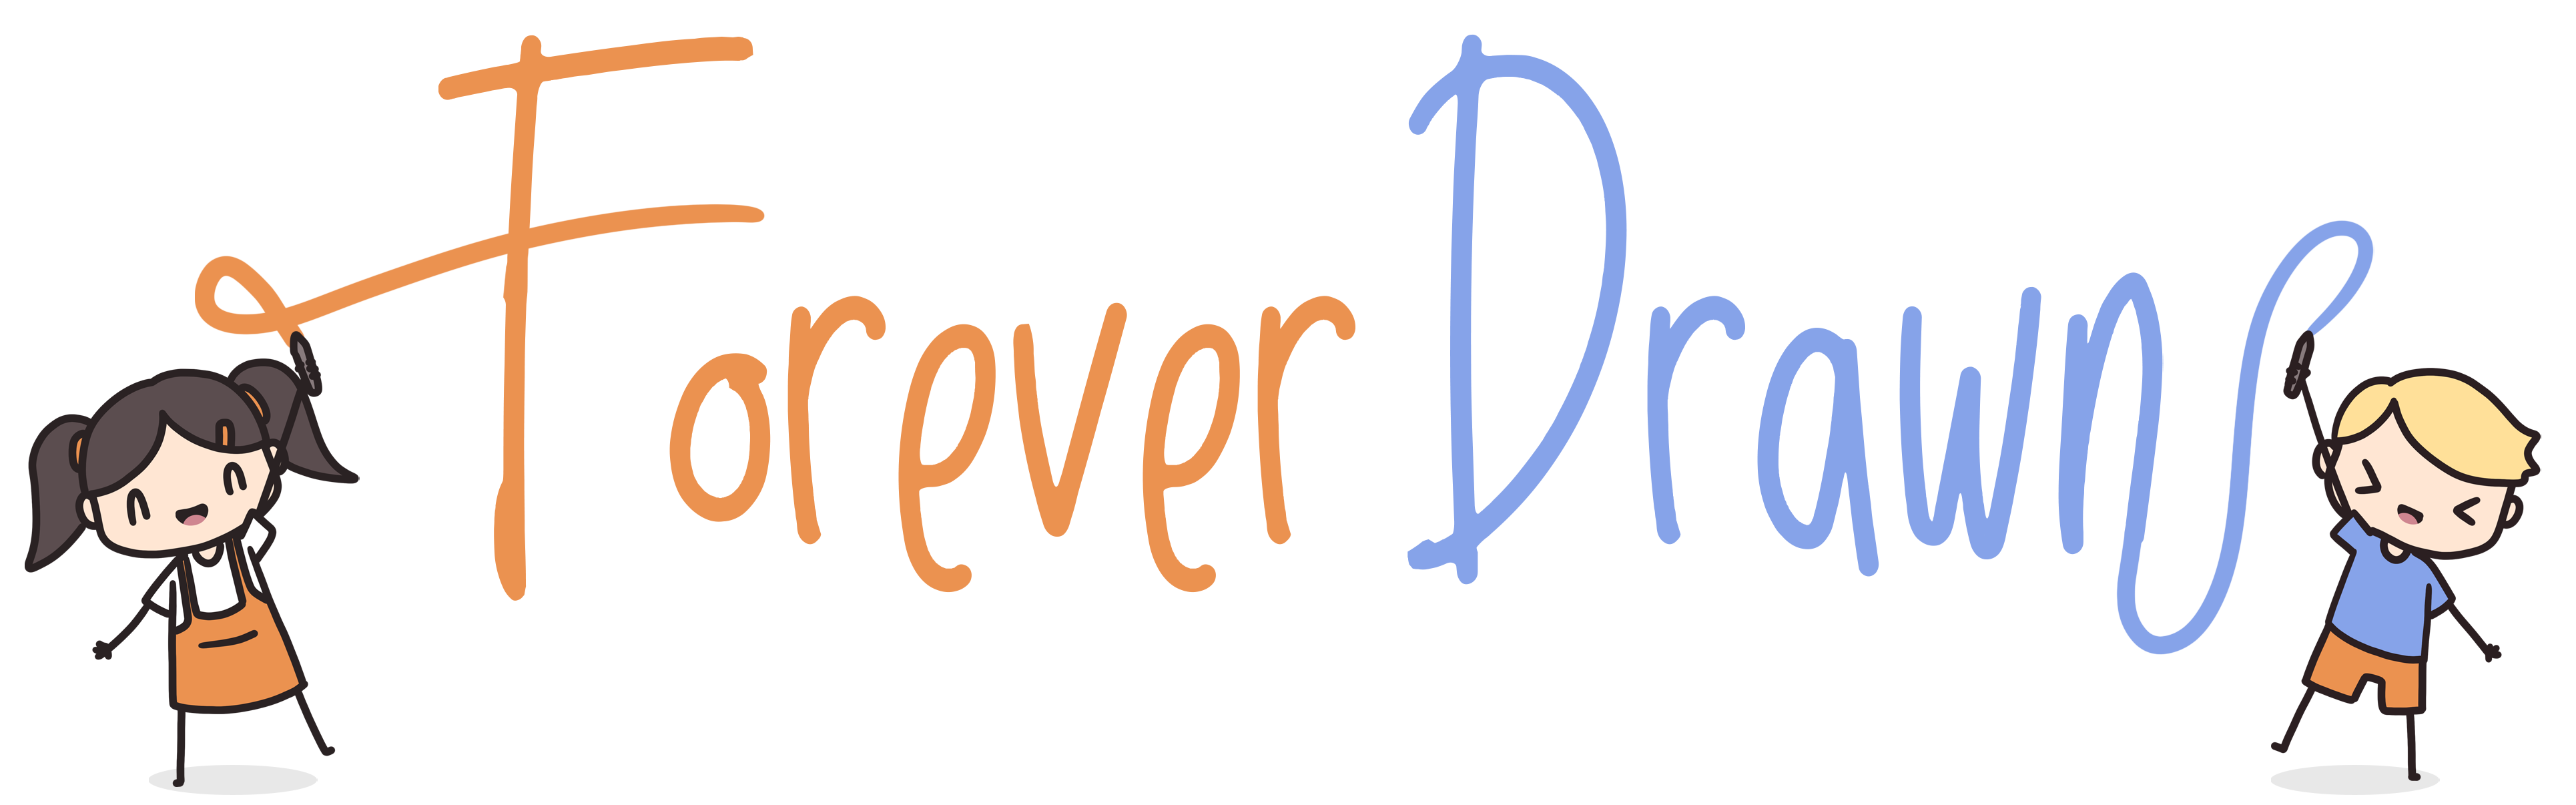 forever drawn logo